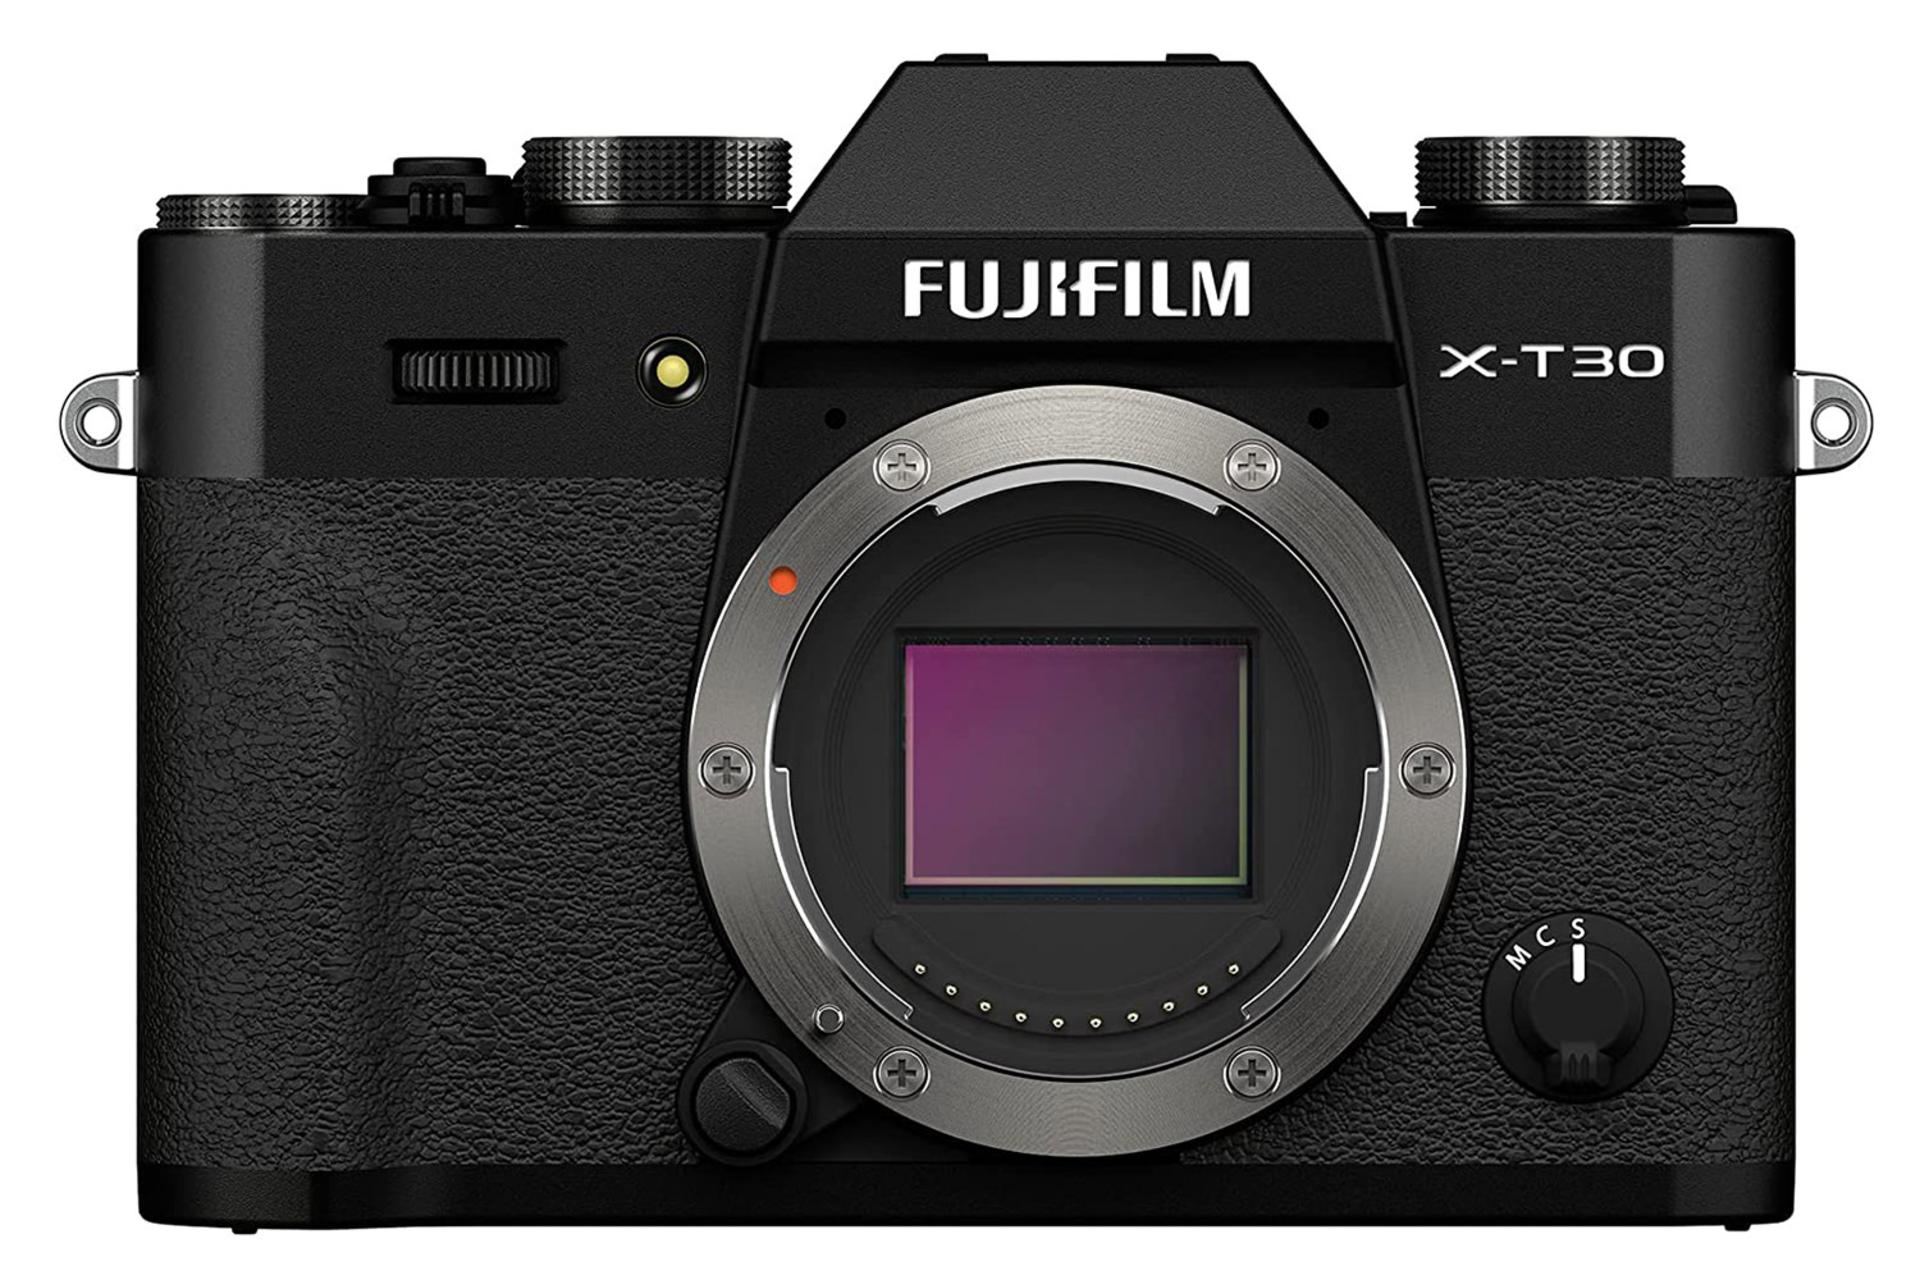 مرجع متخصصين ايران دوربين فوجي فيلم Fujifilm X-T30 II